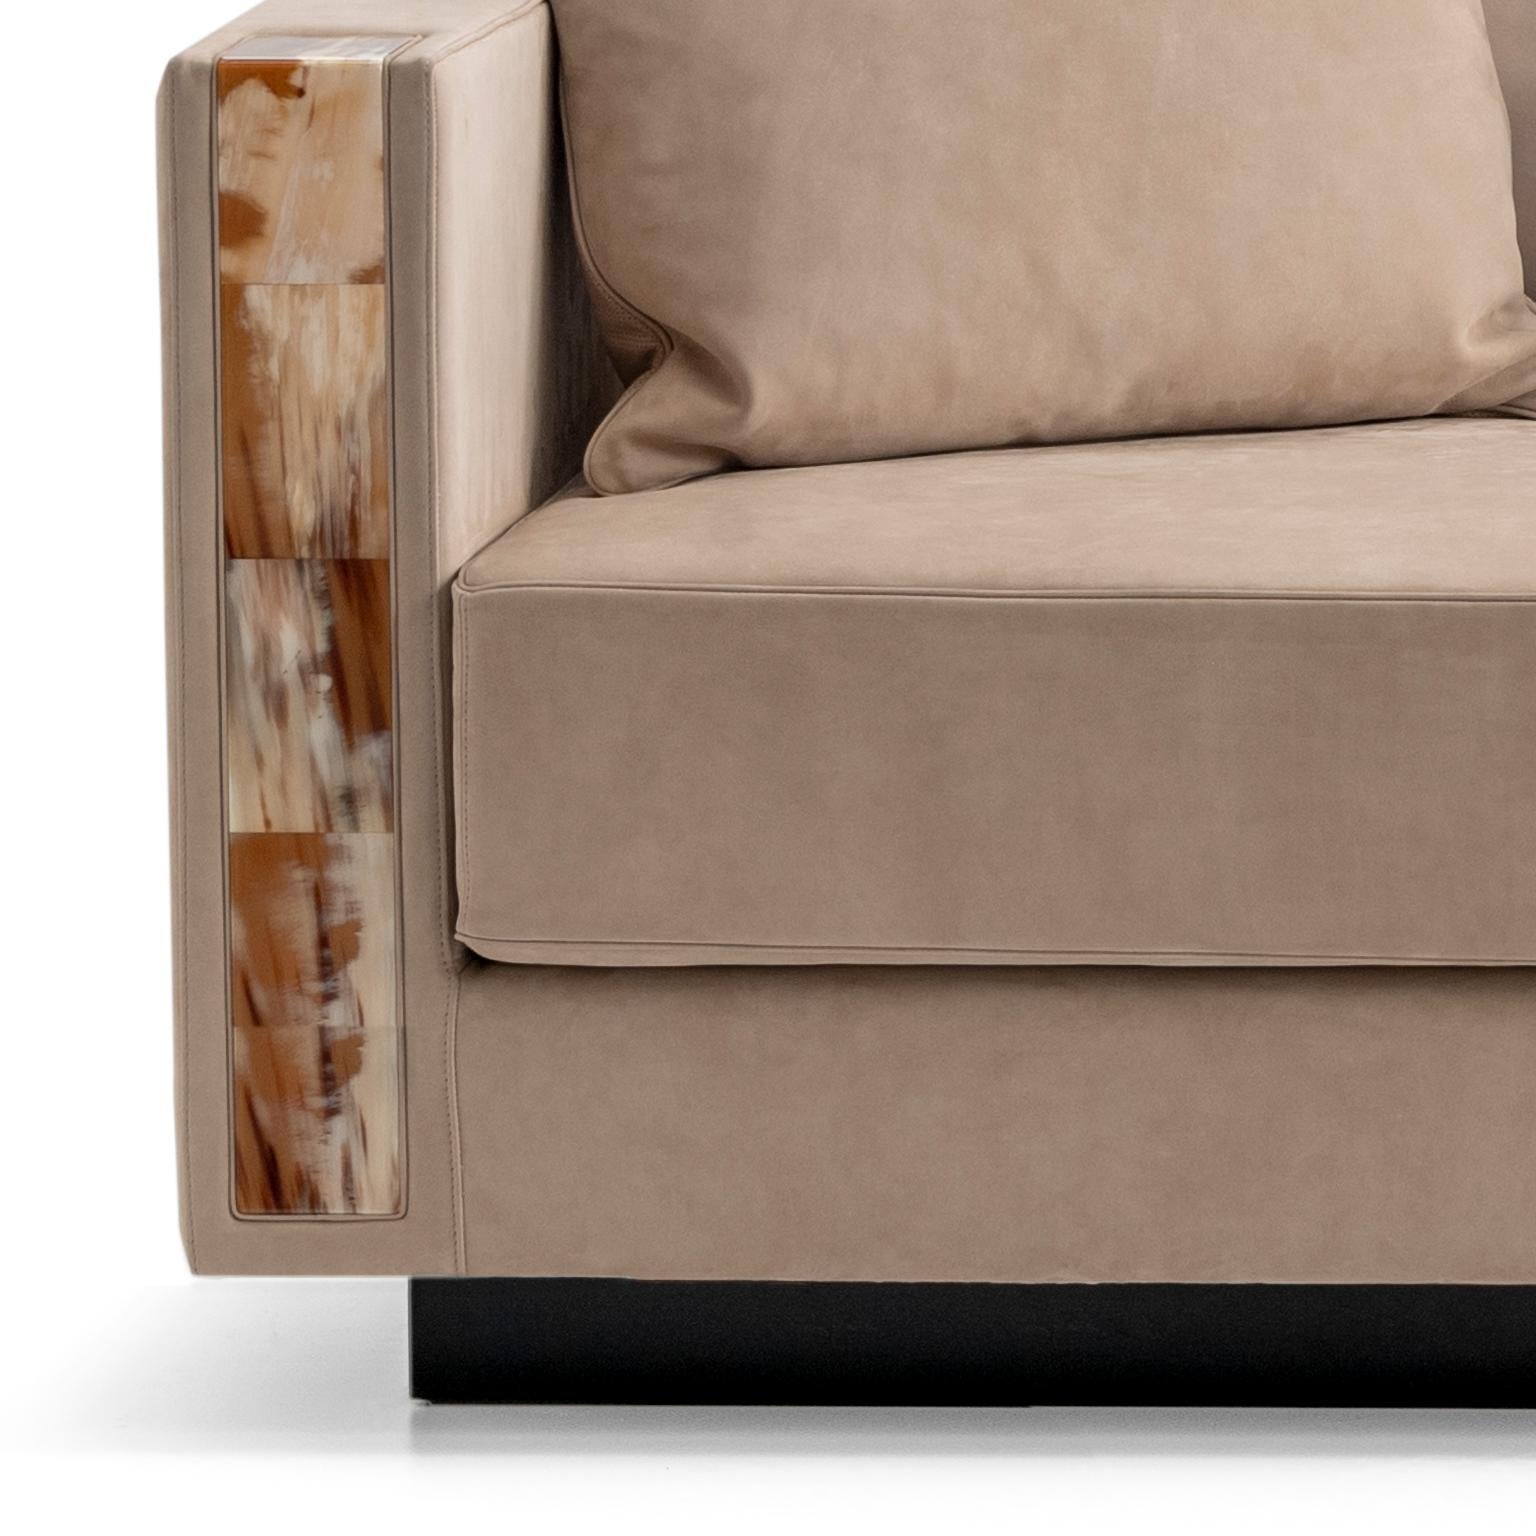 Die Chaiselongue Zeus verbindet optimalen Sitzkomfort mit hohem Stil und eignet sich perfekt für Schlafzimmer, Flure und Lounges. Das Design wird in einem weichen Carmen-Nabuk-Leder (Kat. Luxe) in der Farbe Sabbia angeboten, eine Nuance, die an